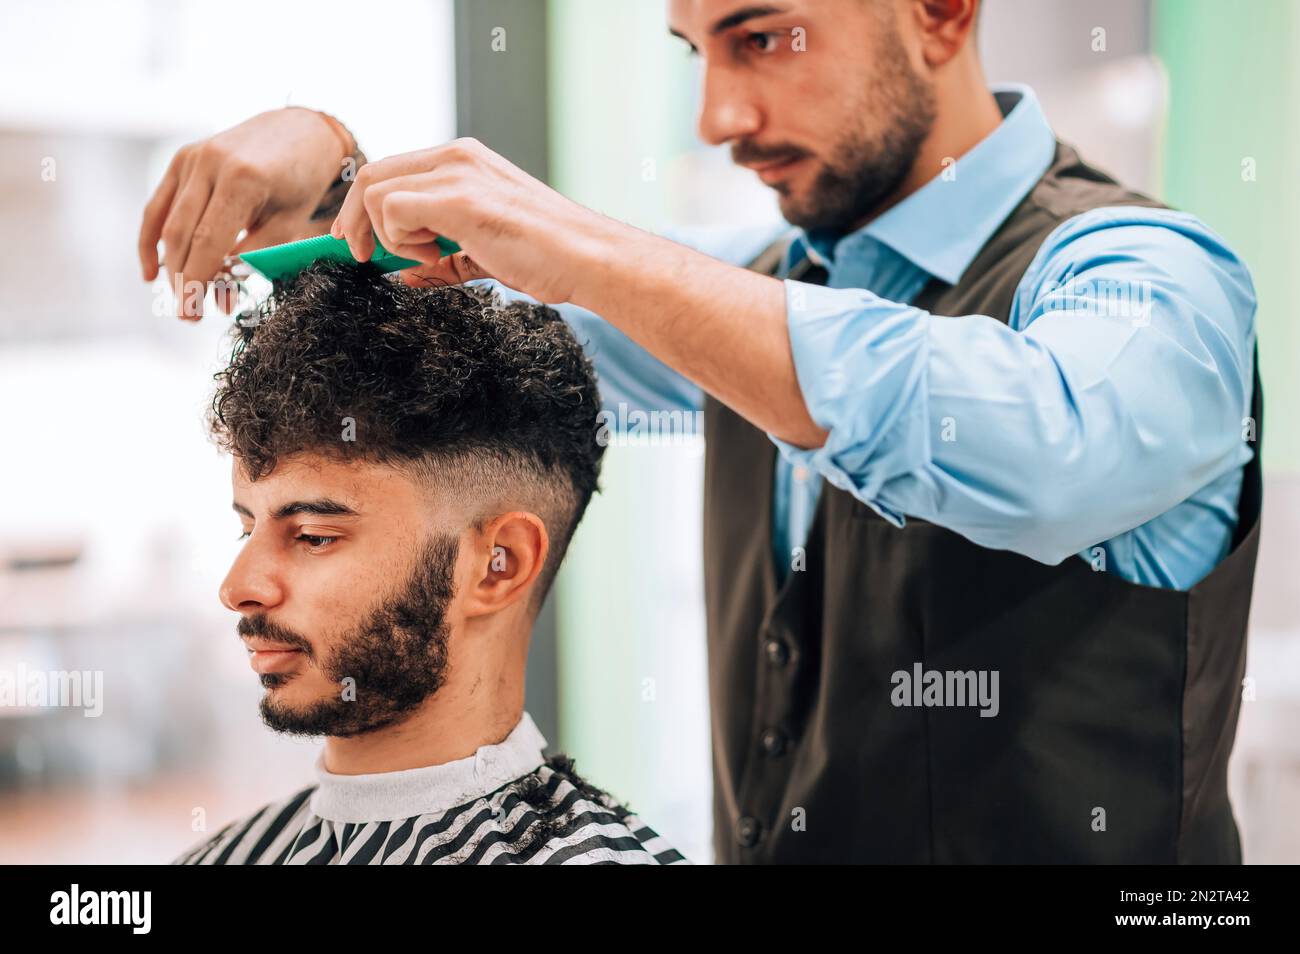 Corte de peluquero de cosecha de pelo oscuro rizado del cliente macho barbudo en capa rayada sentado durante el corte de pelo profesional en barbería Foto de stock